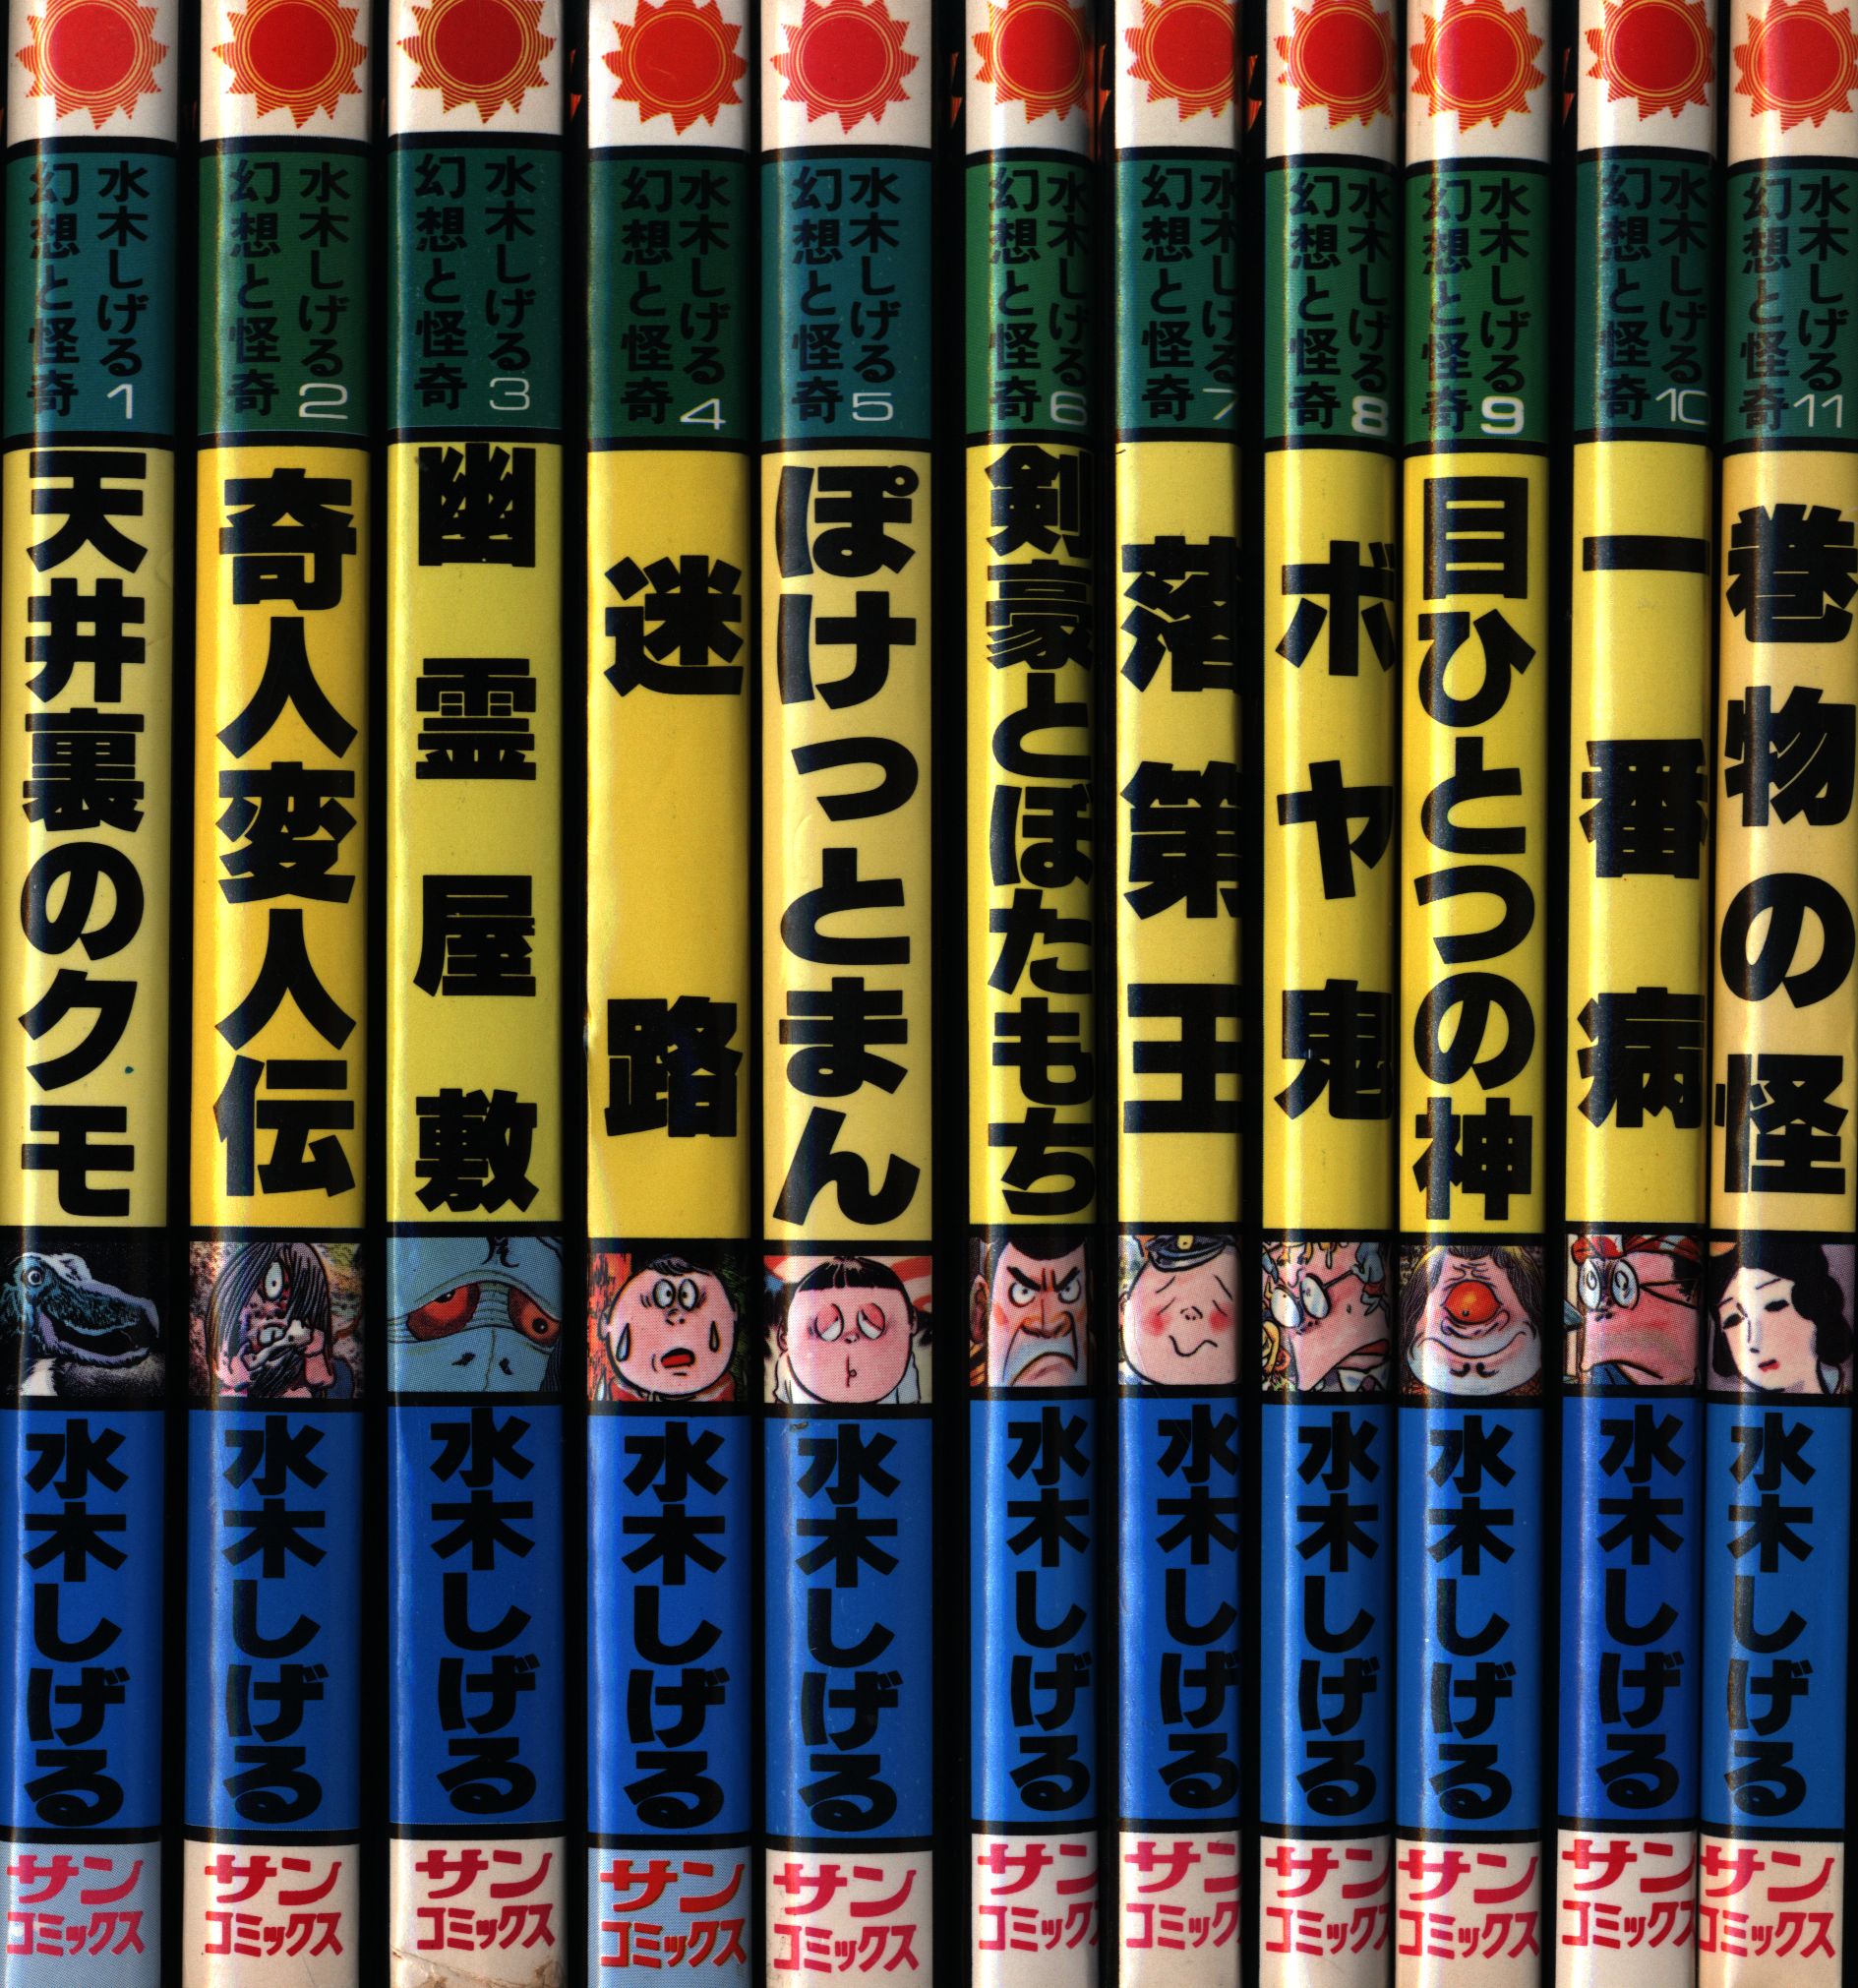 朝日ソノラマ サンコミックス 水木しげる 幻想と怪奇全11巻 再版セット 